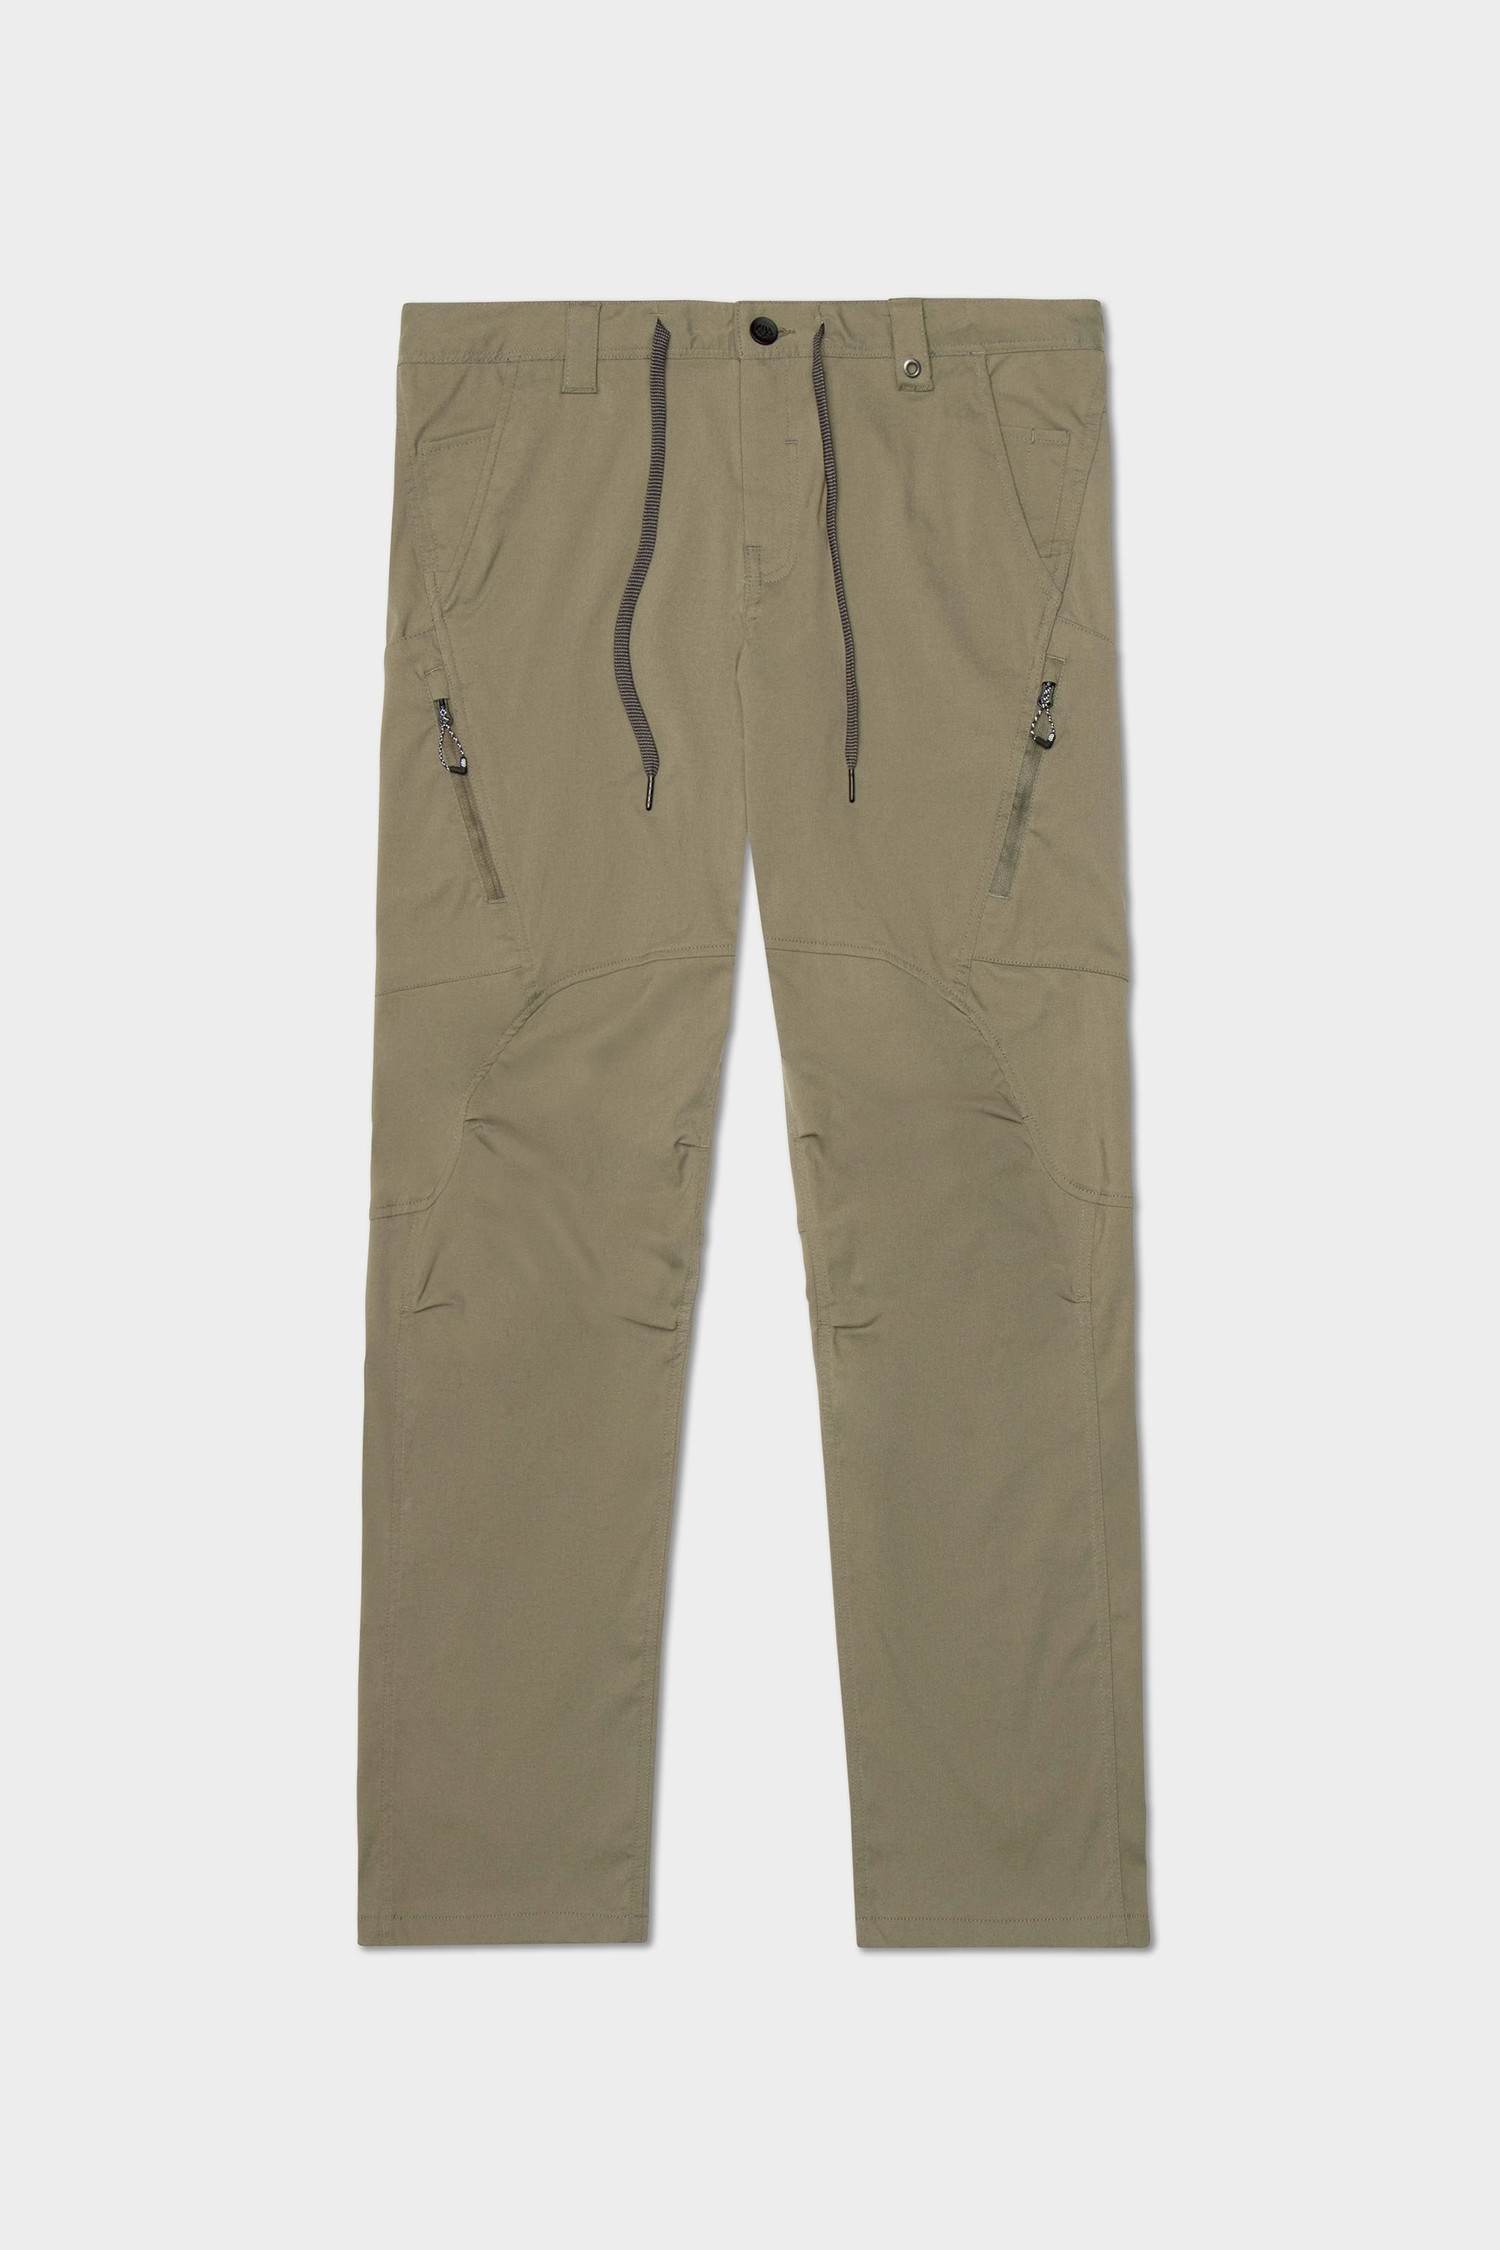 Side Pocket Design parralal Cargo Pant For Women